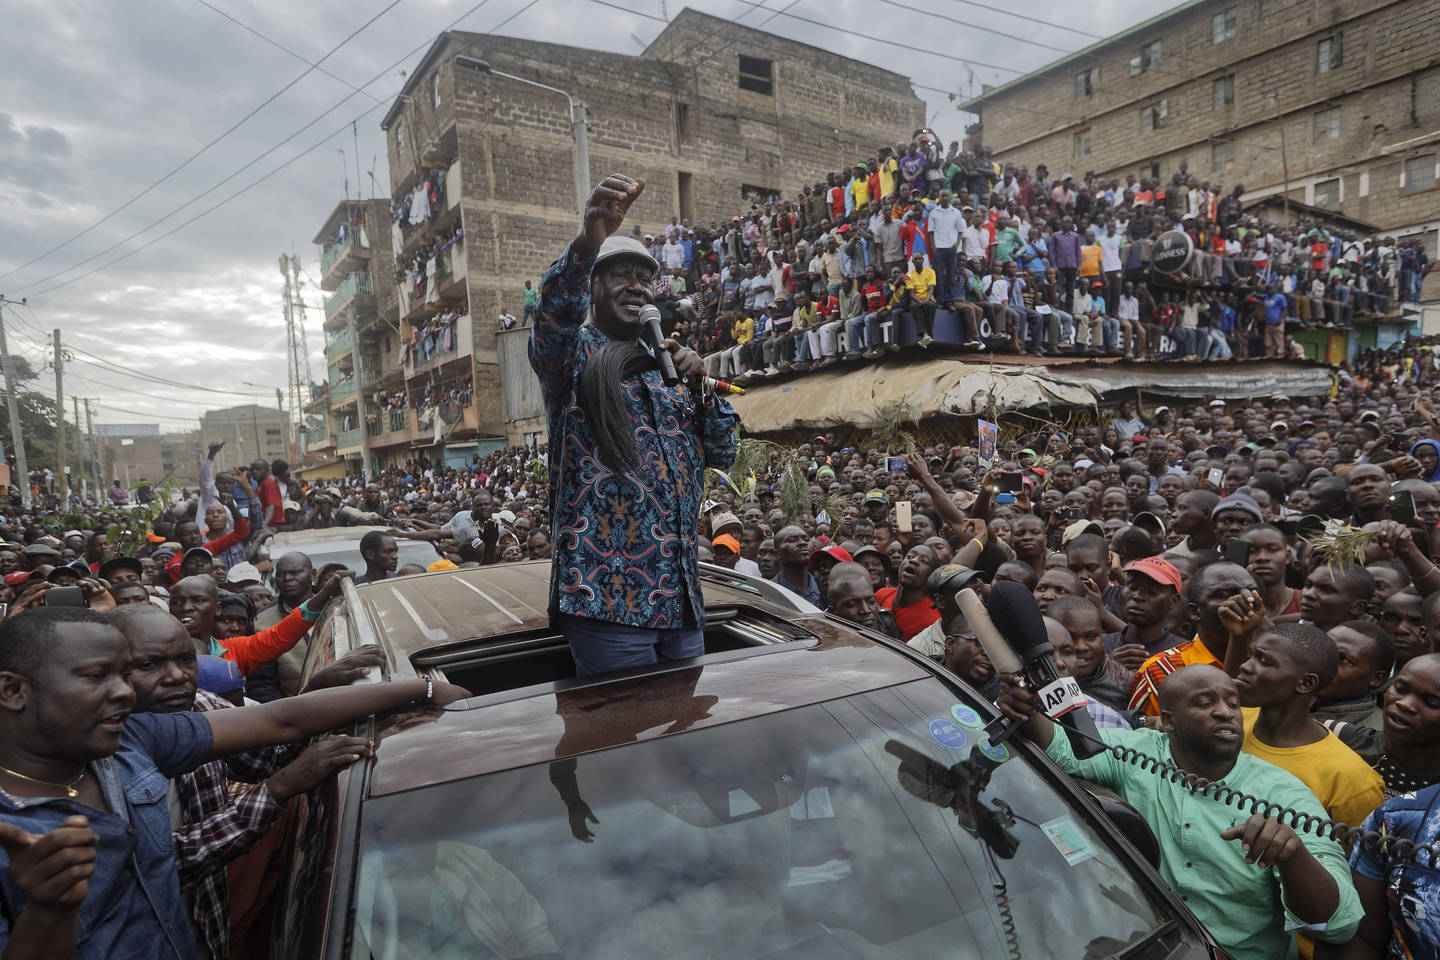  Kenijos opozicijos lyderis Raila Odinga kalba miniai. Rugpjūčio 13 d., Nairobis (Kenija).<br> AP nuotr.